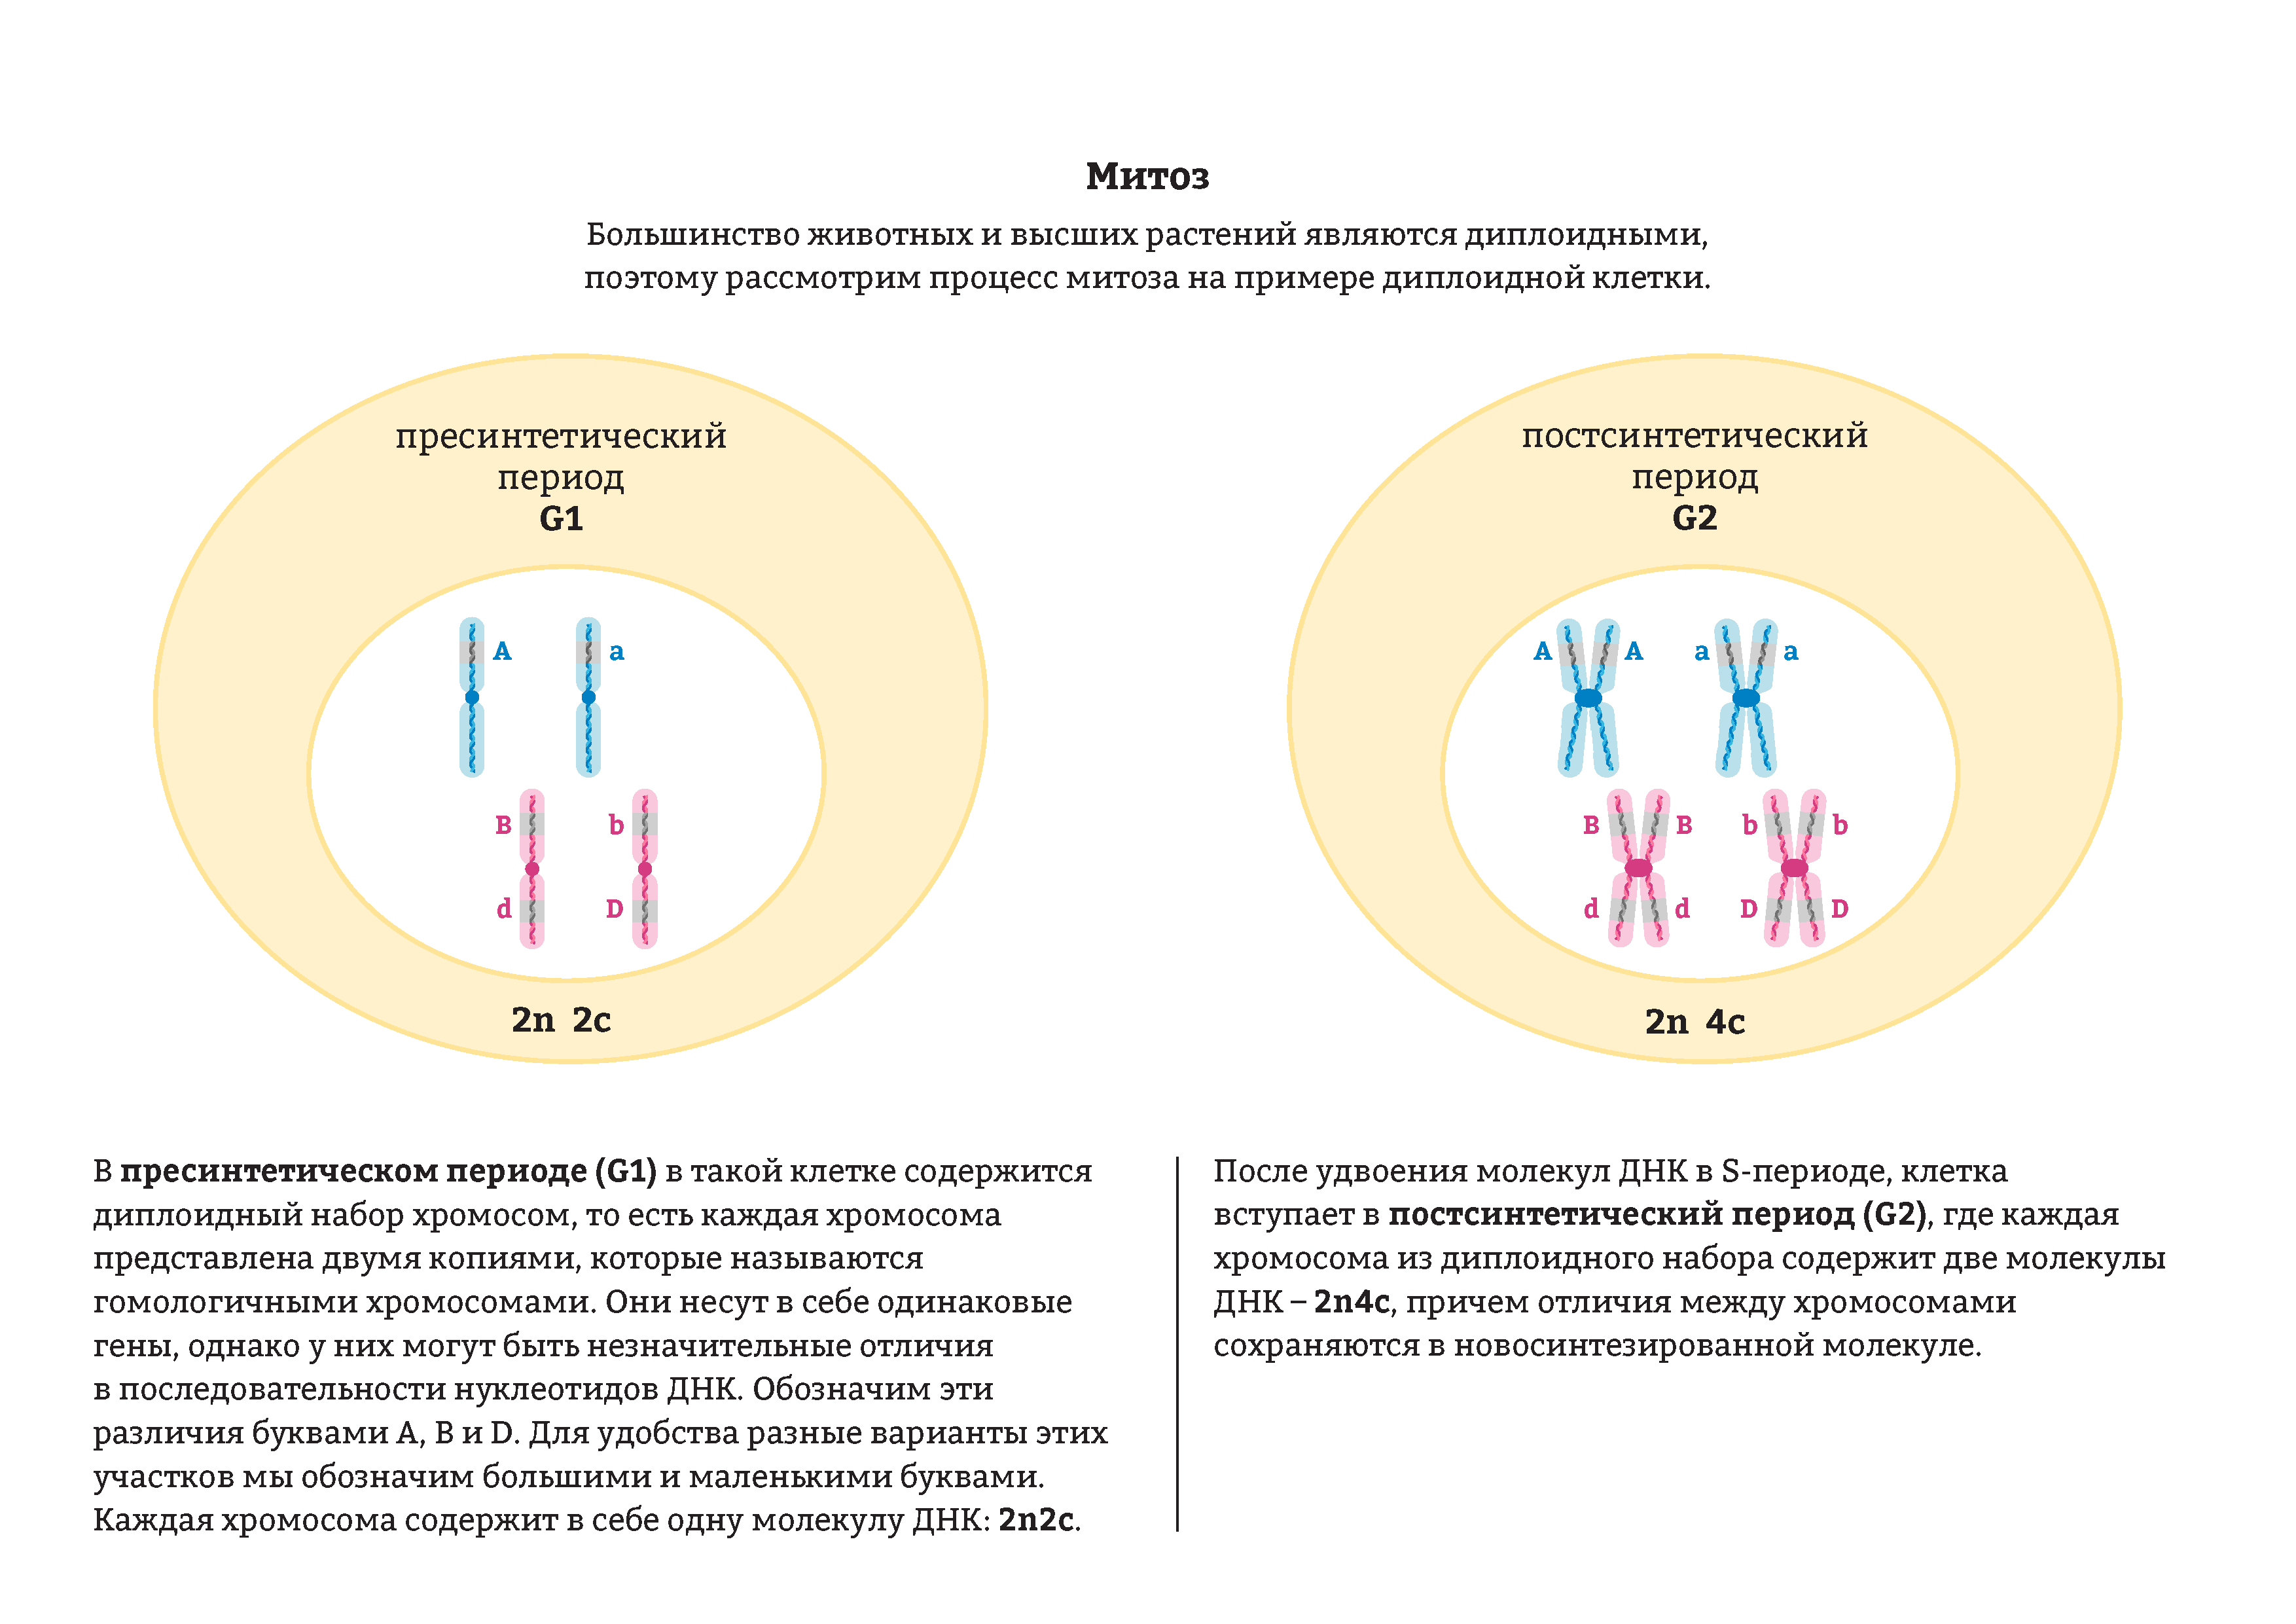 Набор хромосом и днк клетки 2n2c. Строение хромосом гаплоидный и диплоидный набор хромосом. Диплоидный набор хромосом в митозе. Гаплоидный и диплоидный набор хромосом в митозе. Диплоидный набор клеток.